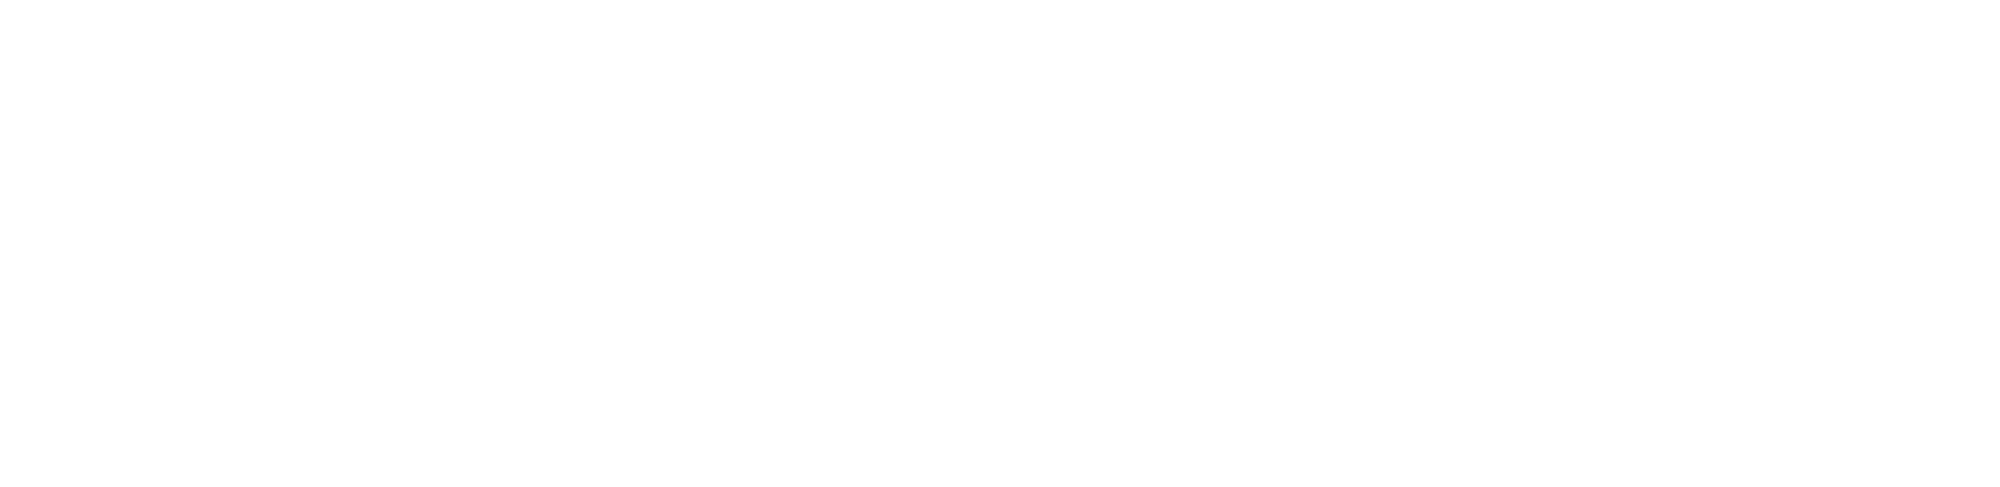 Dall-E 2